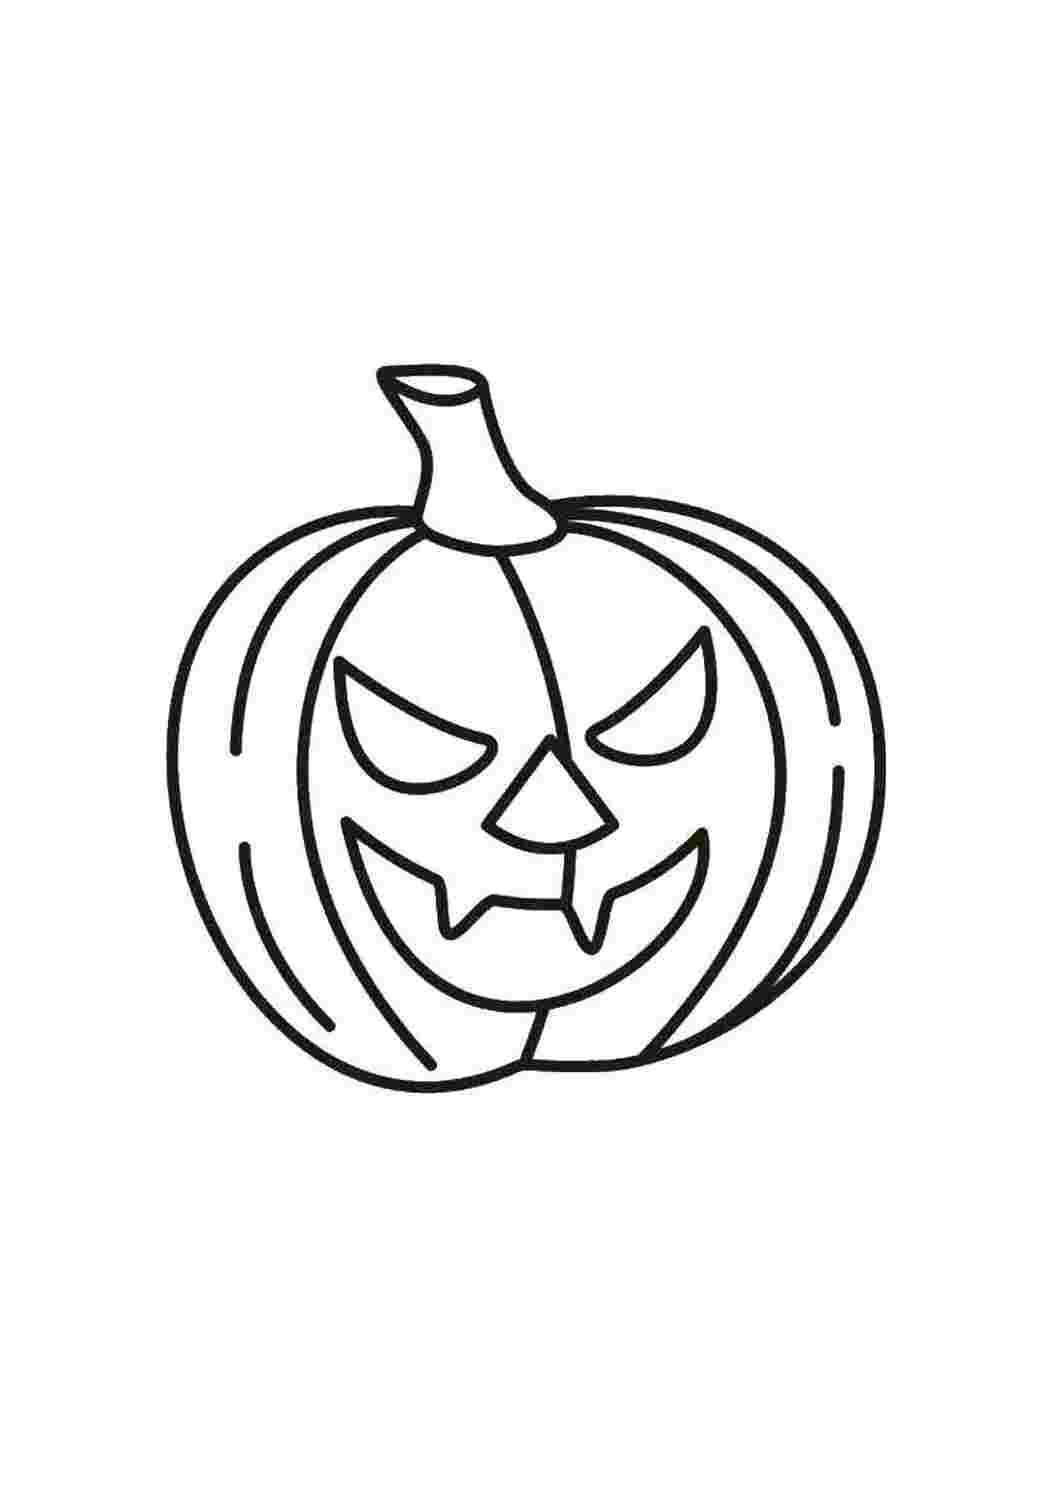 ТОП-5 смешных идей украшения тыквы на Хэллоуин